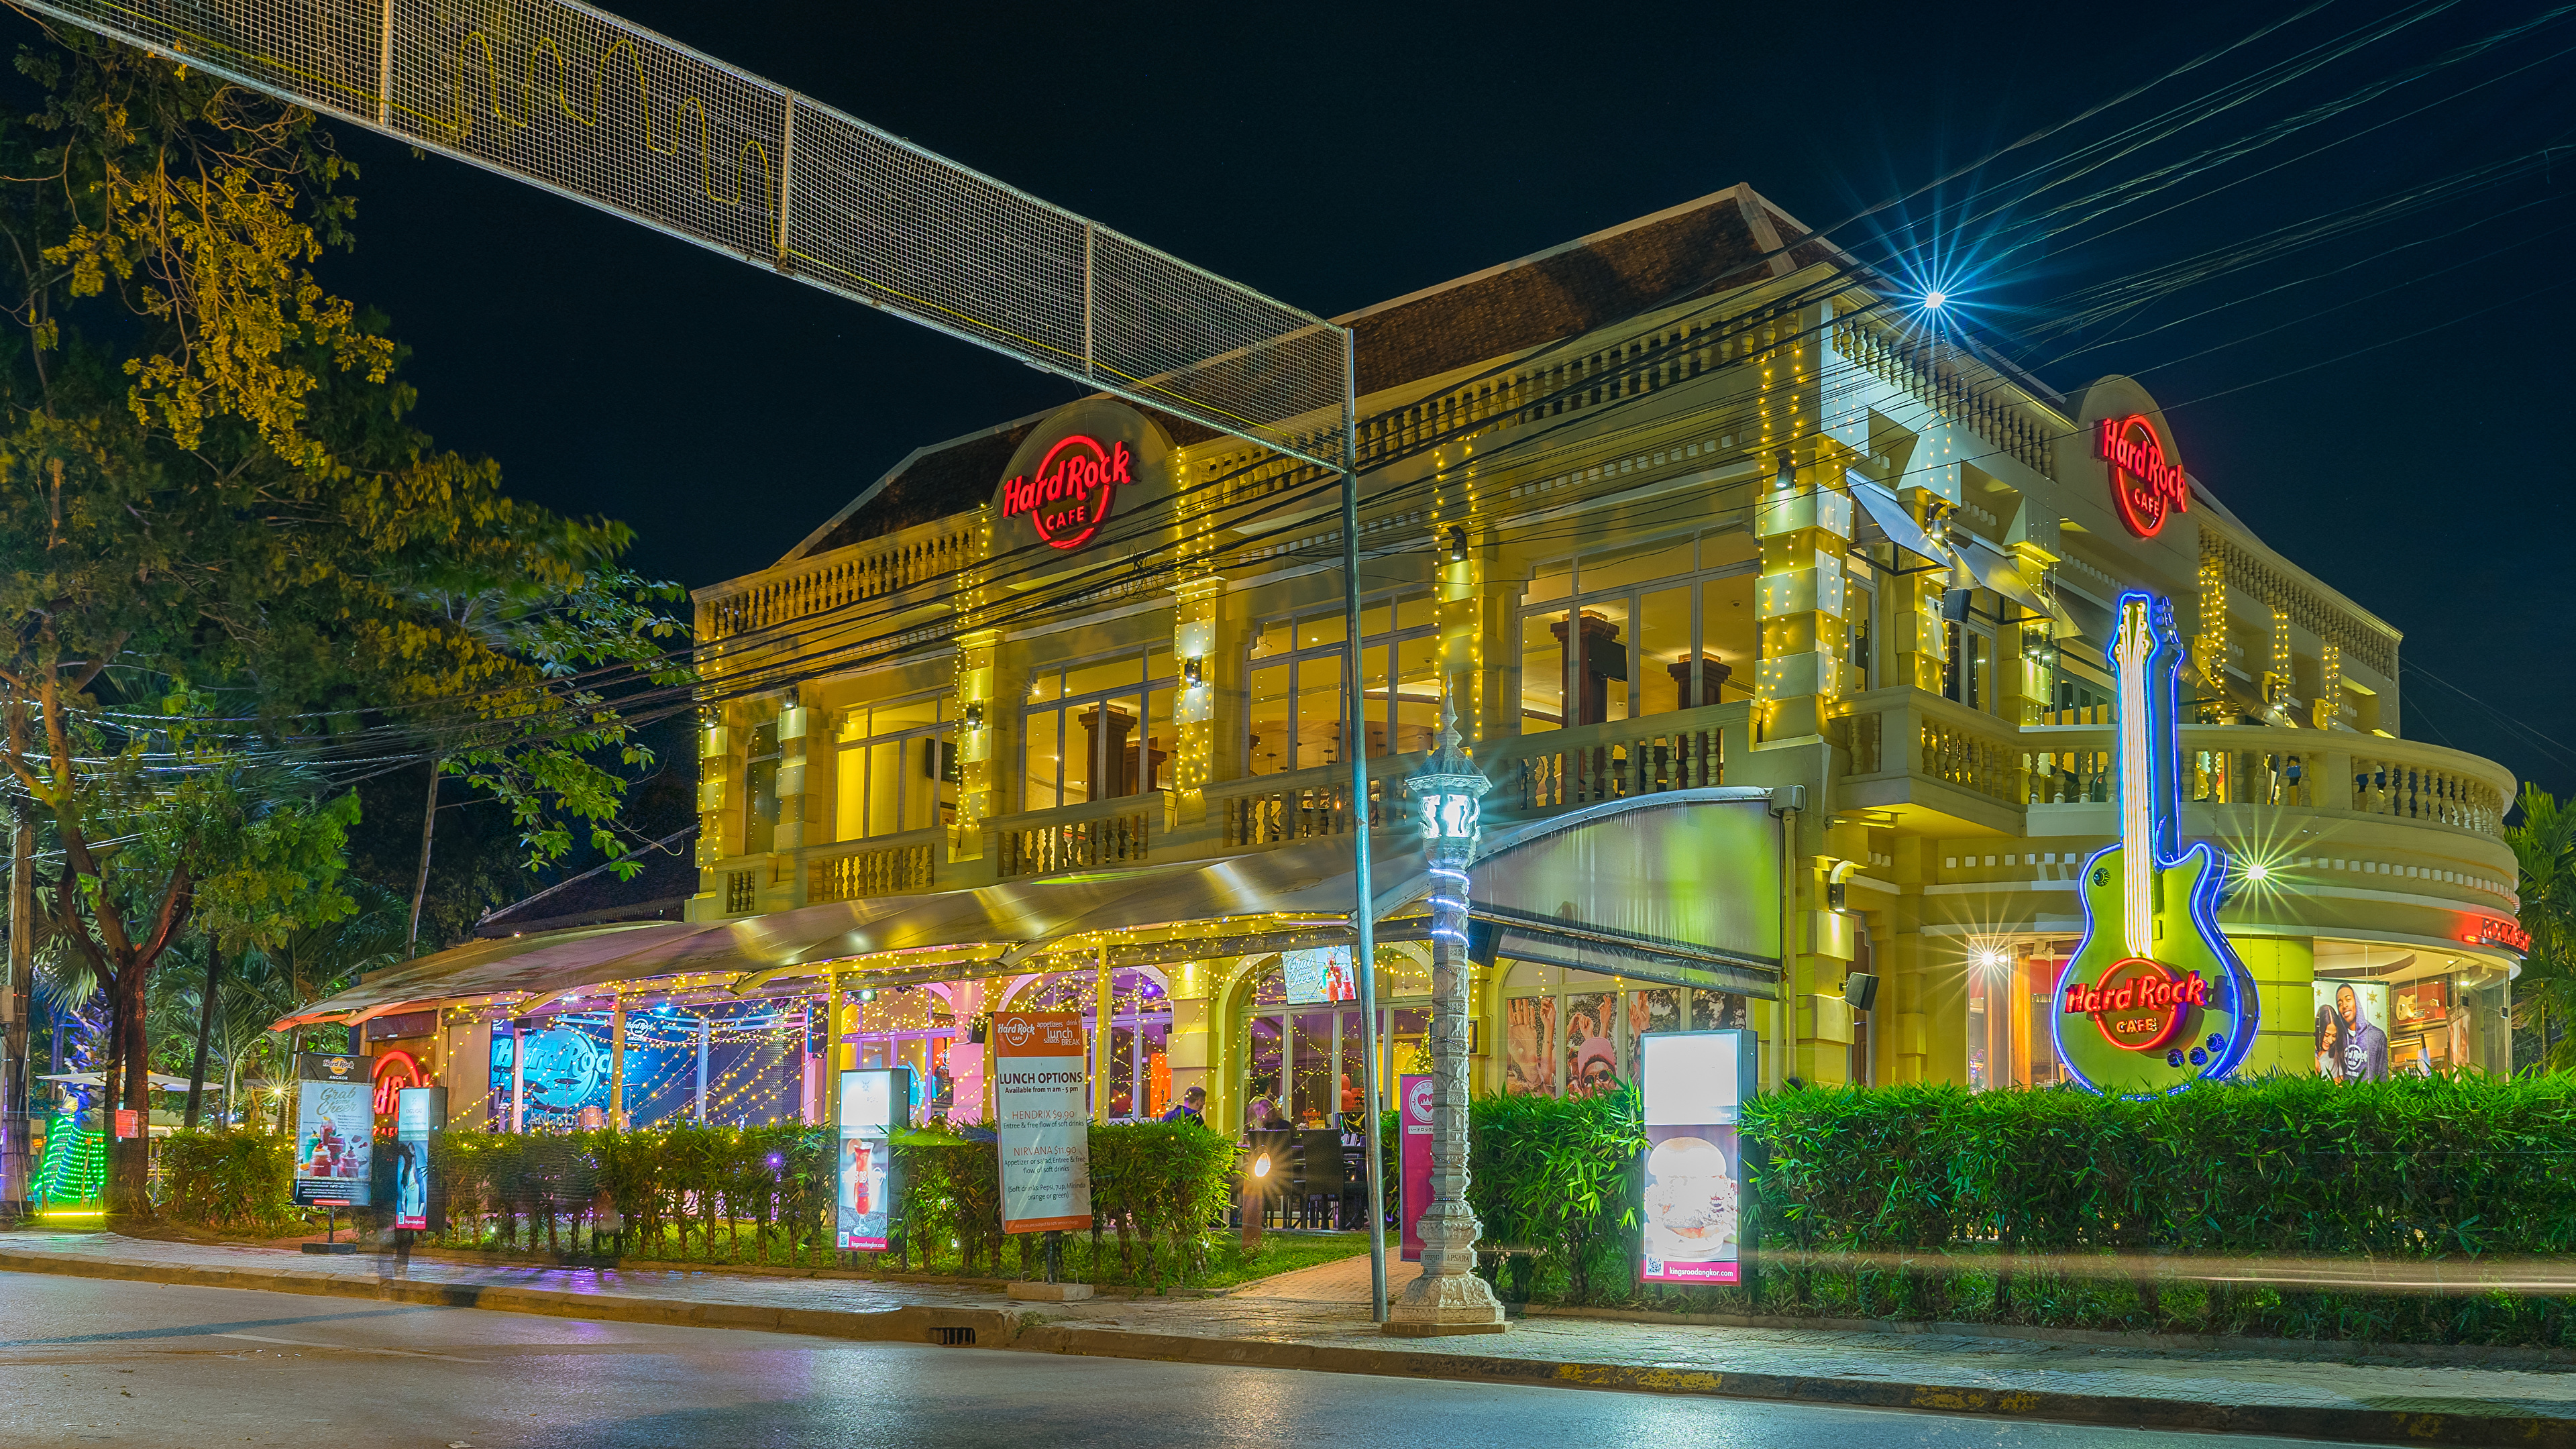 壁紙 3840x2160 住宅 Hard Rock Cafe Cambodia ストリート 街灯 夜 都市 ダウンロード 写真